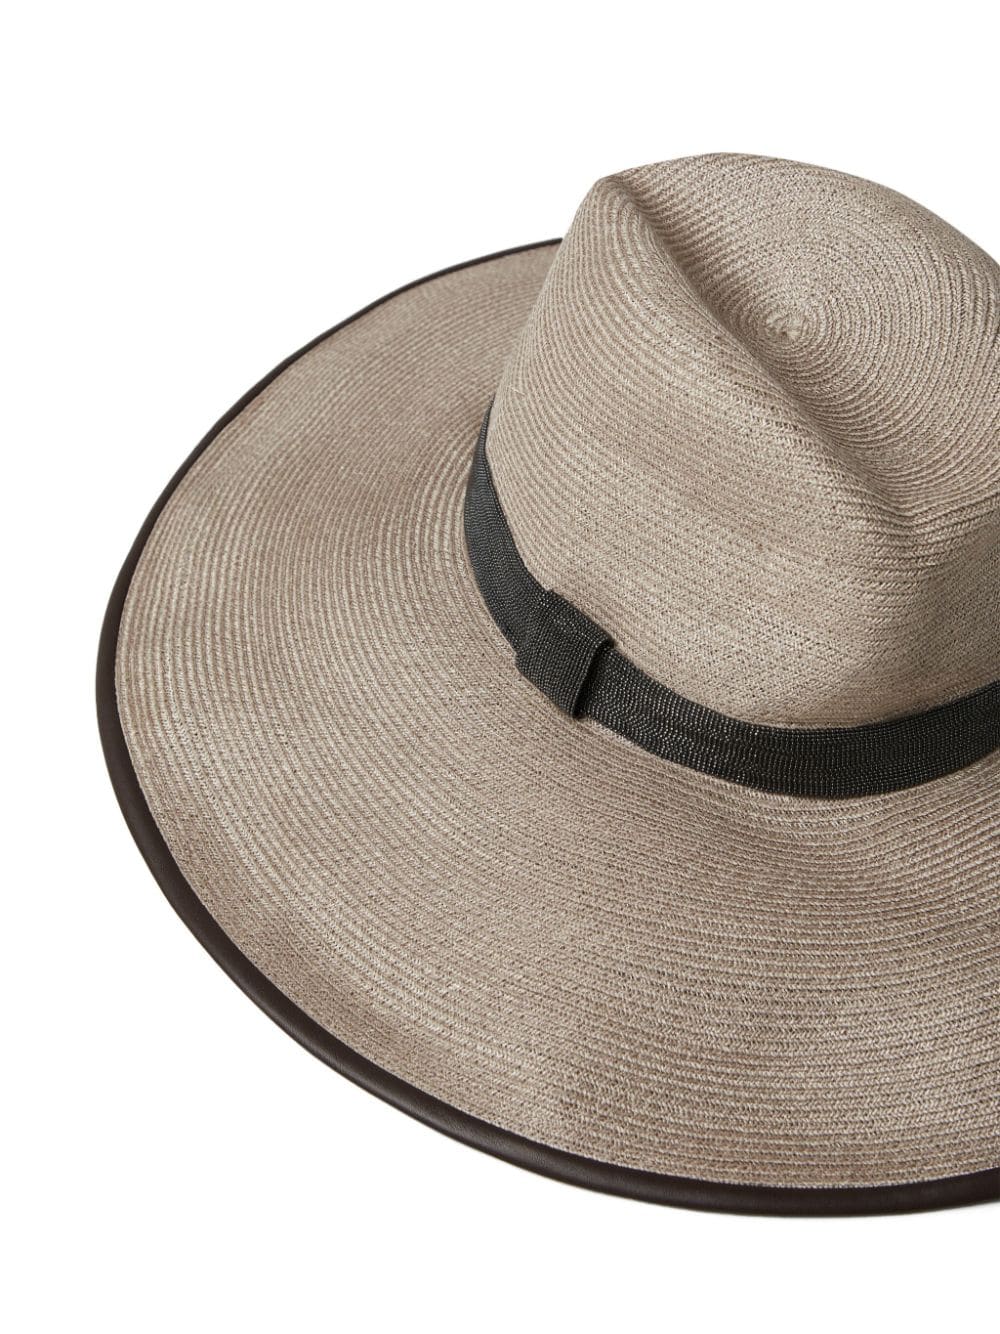 BRUNELLO CUCINELLI Beige Cotton Blend Fedora Hat with Monili Chain Detail for Women - SS24